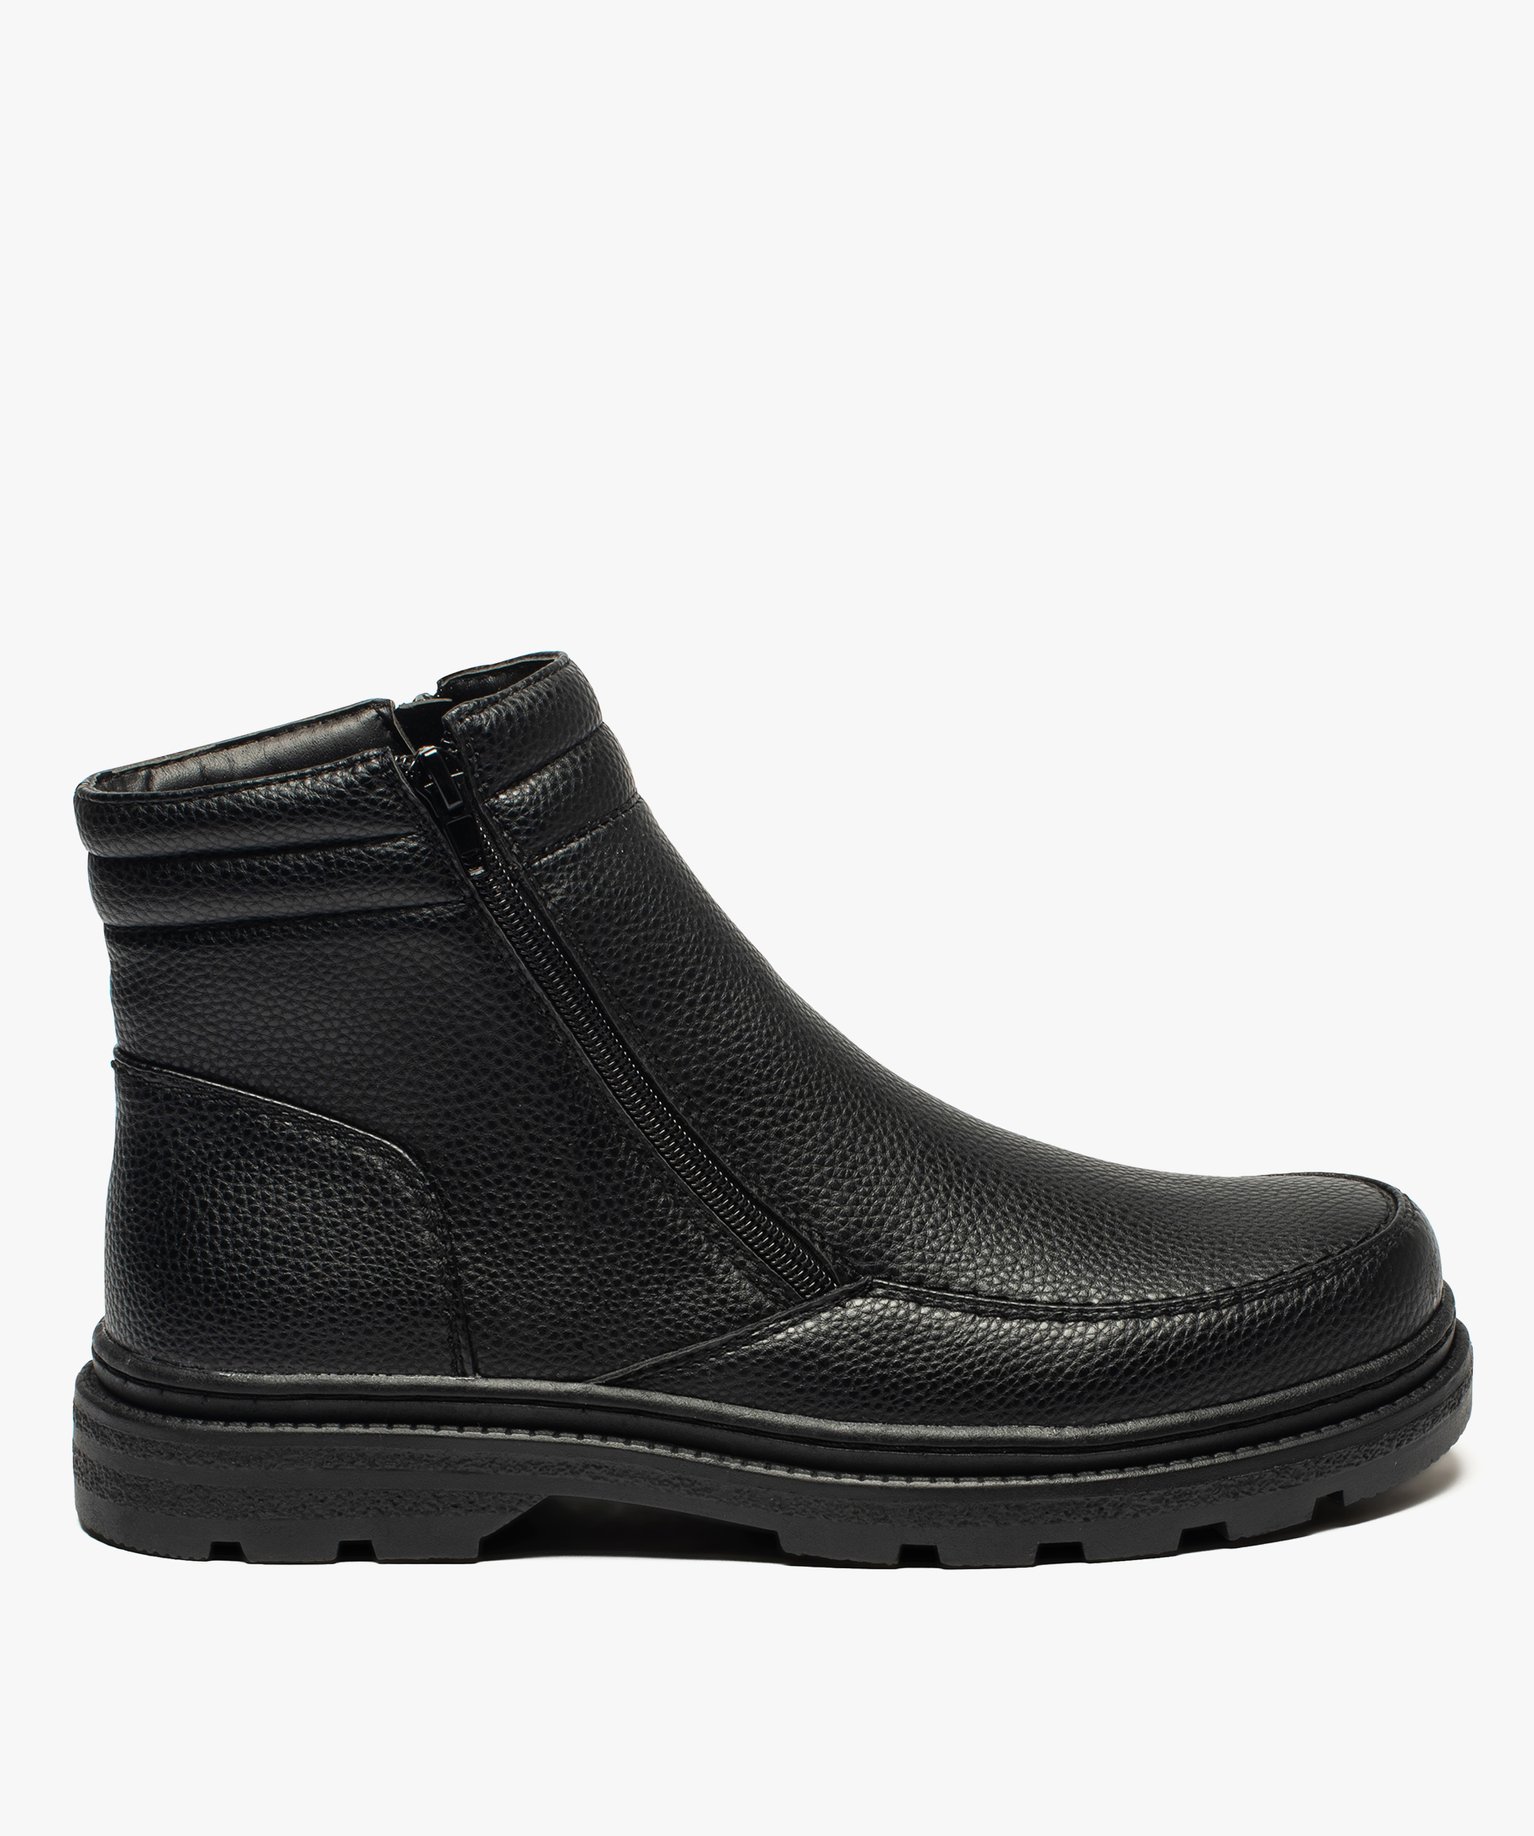 boots homme double zip gamme confort